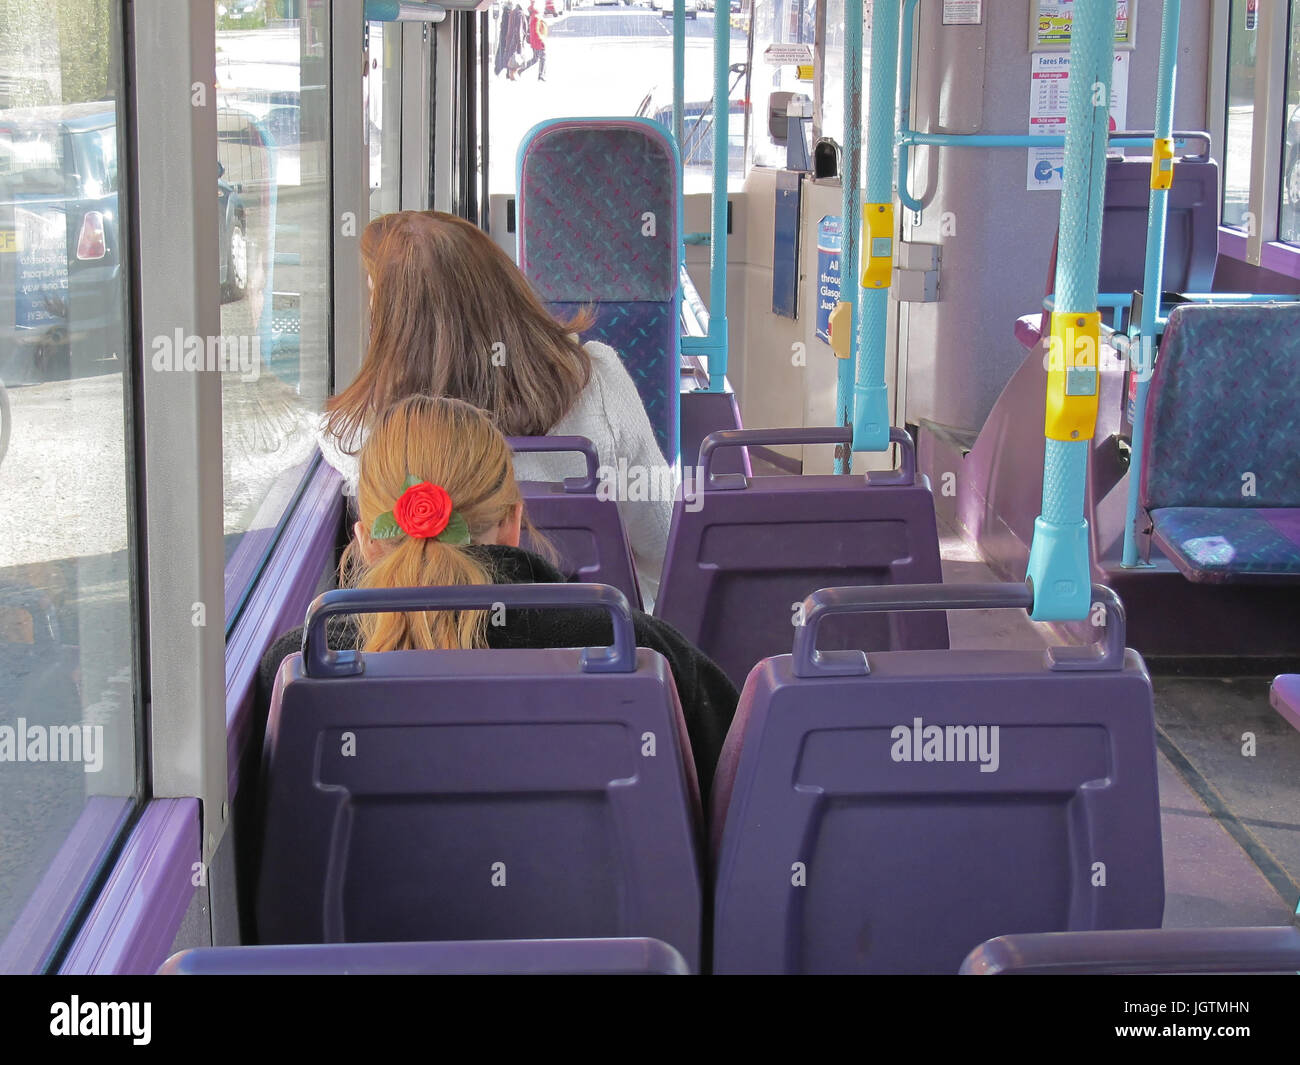 L'arrière de la tête avec un bandeau rose cheveux blonds fille femme sièges de transport public bus vide Banque D'Images